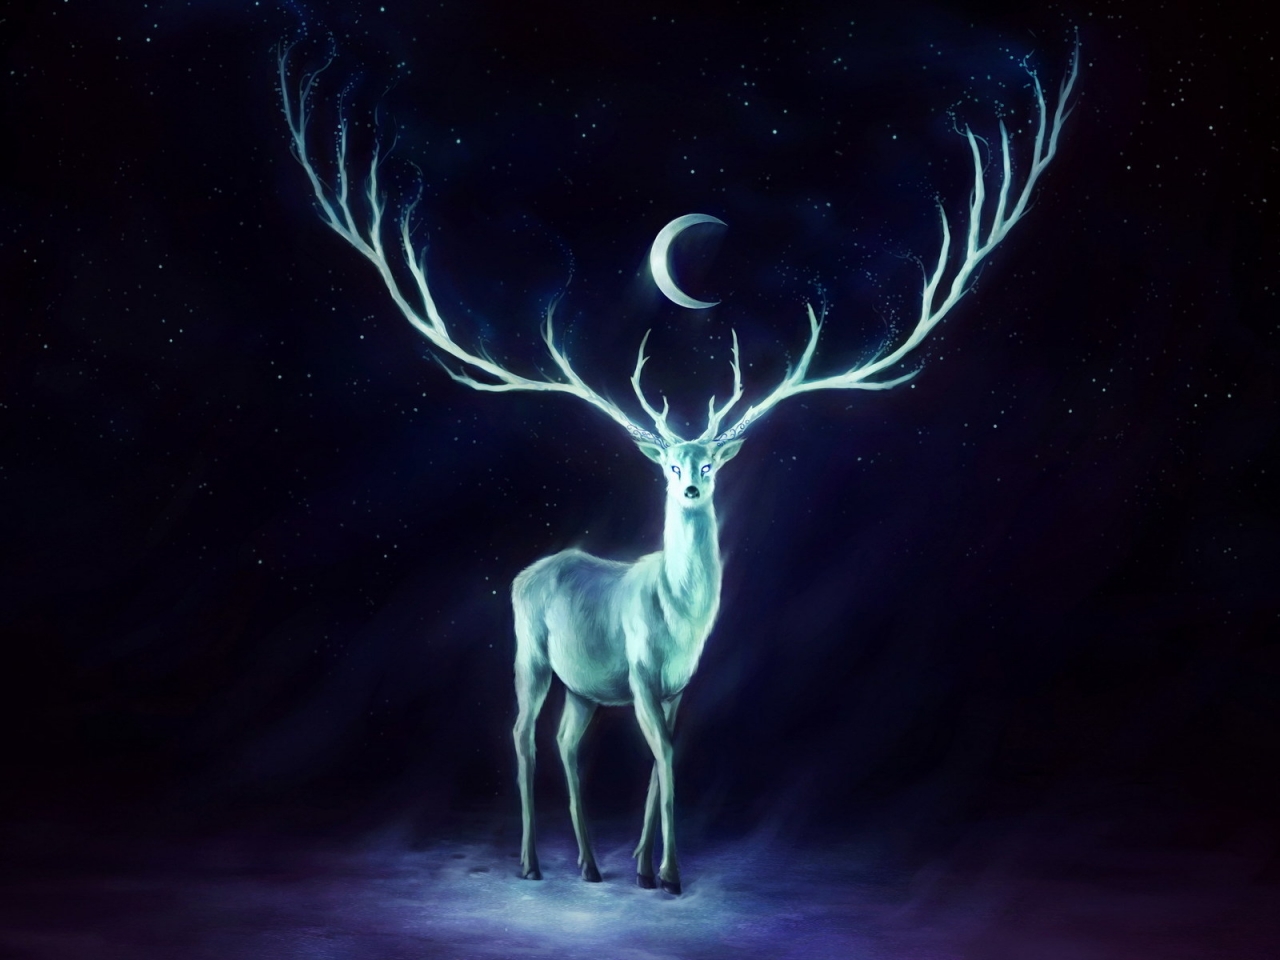 White Deer for 1280 x 960 resolution